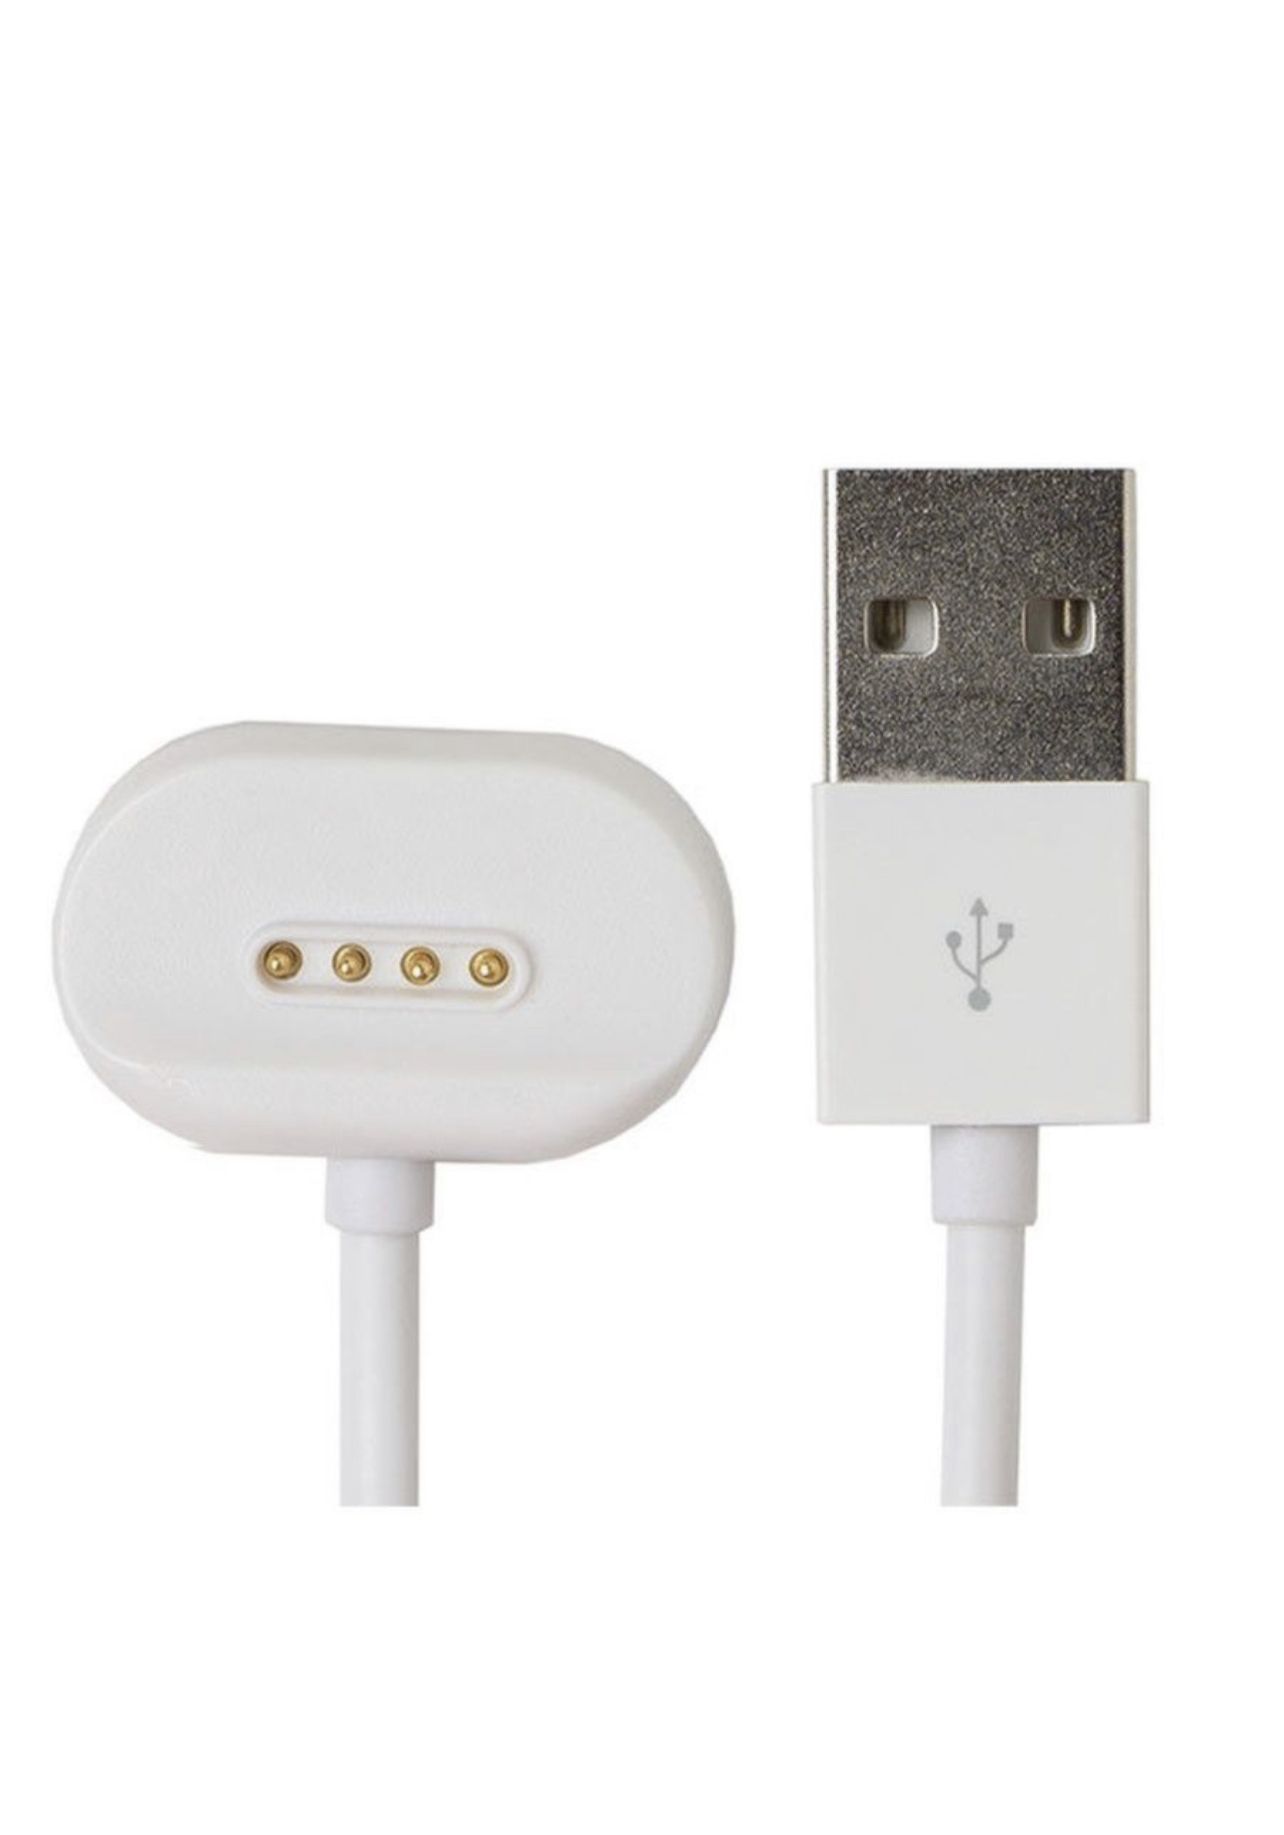 Купить зарядное для часов. USB кабель для Elari KIDPHONE 4gr. Elari Fixitime 3 кабель зарядки. Магнитная зарядка USB кабель для смарт- умных- детских часов, 4 Pin. Fixitime 3 ft-301 зарядный кабель.